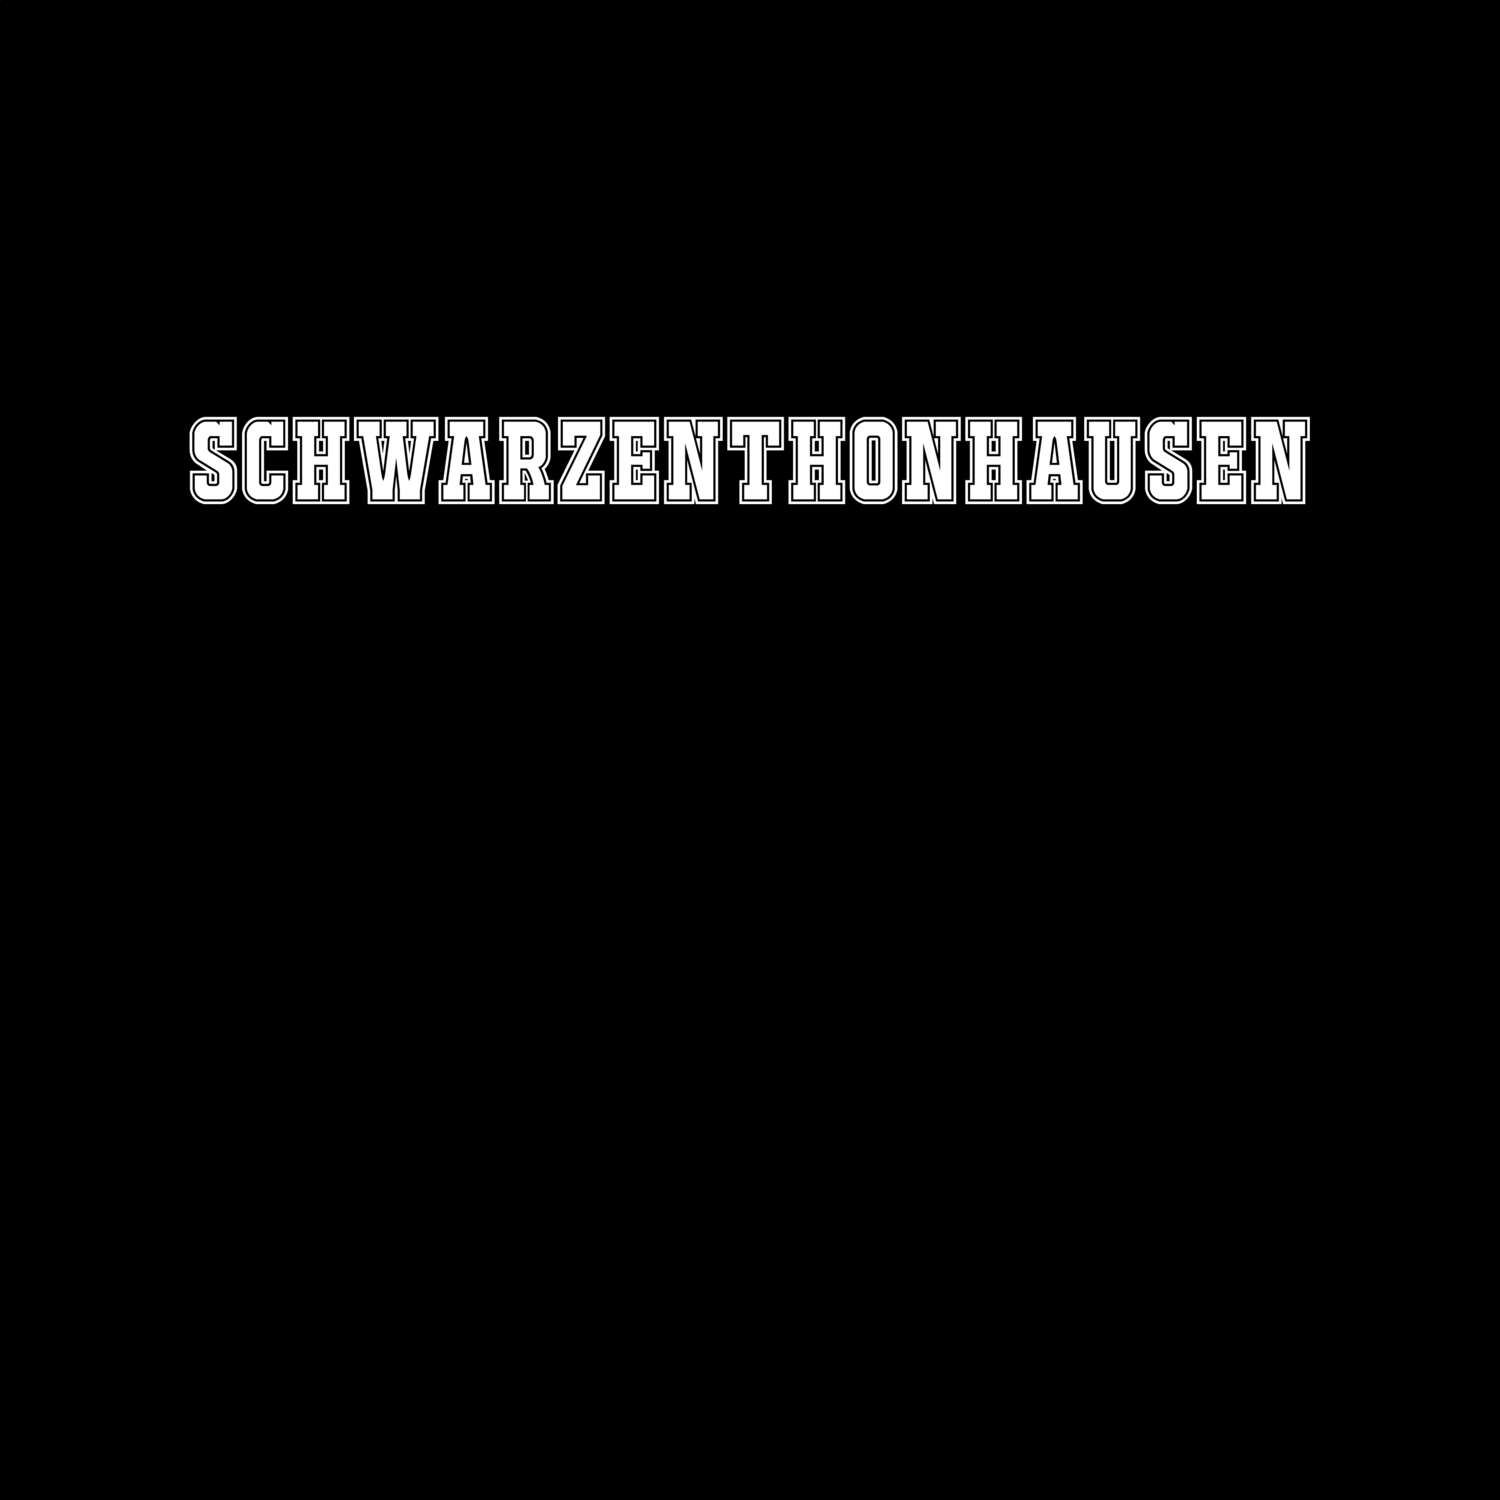 Schwarzenthonhausen T-Shirt »Classic«